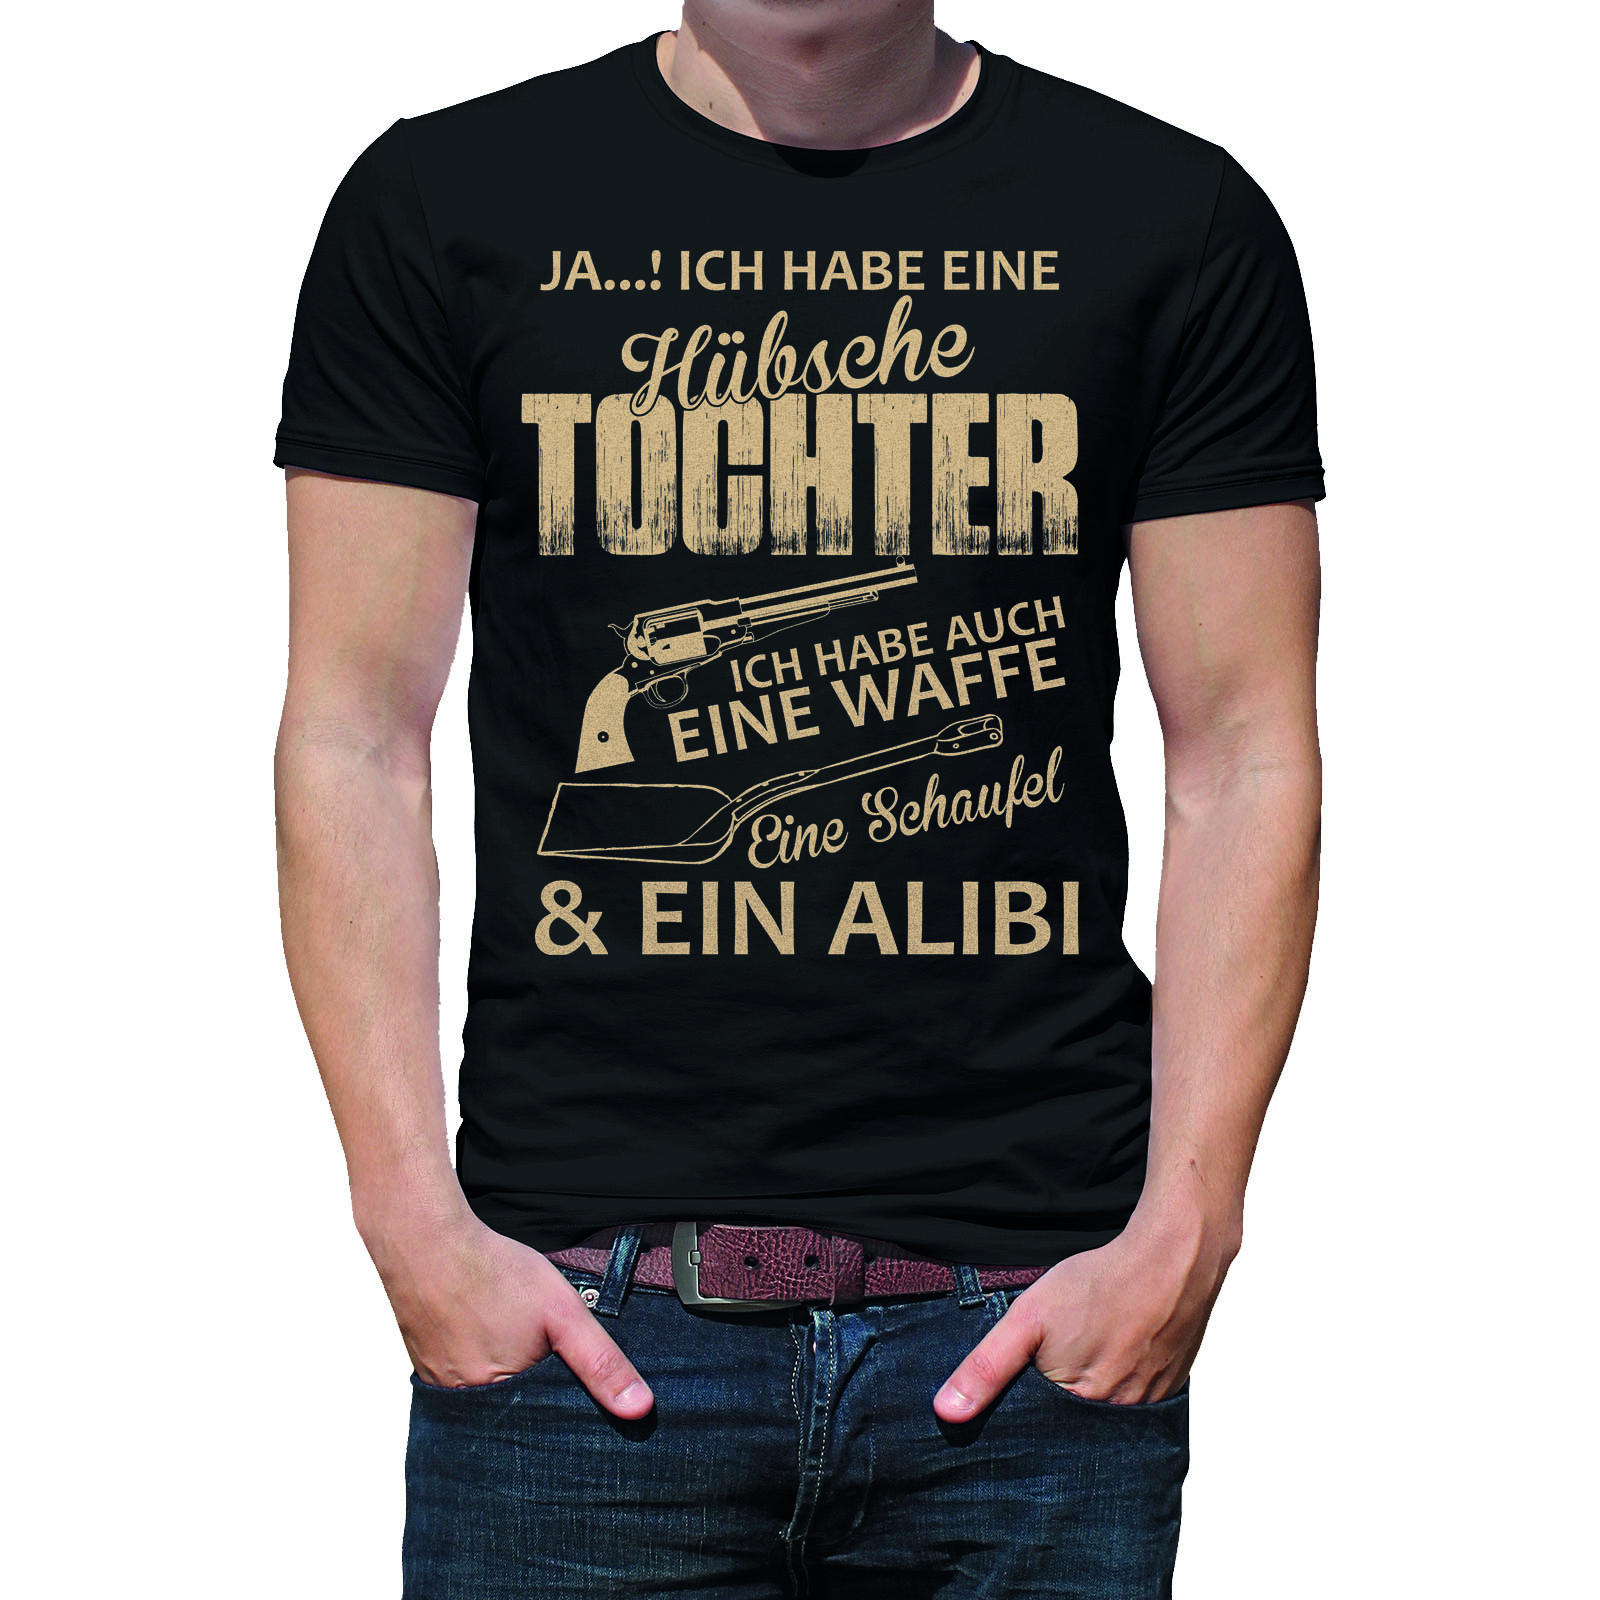 Herren T Shirt Modell Hübsche Tochter  - Onlineshop LieblingsMensch